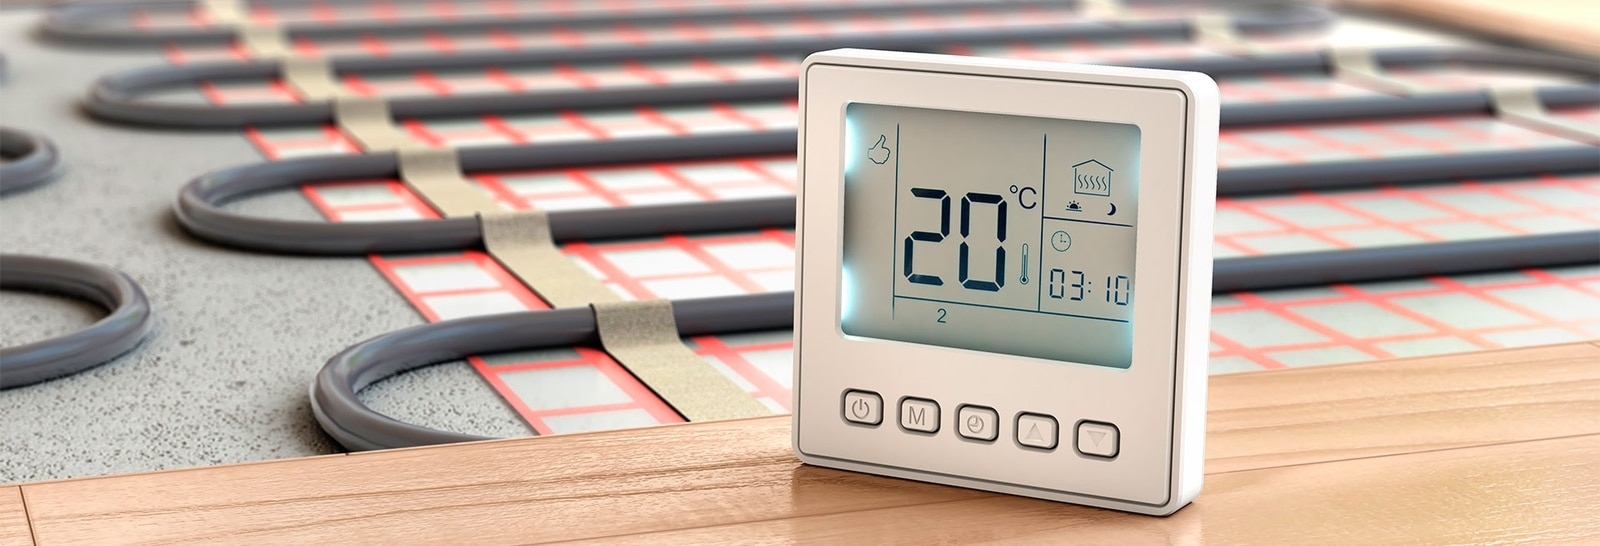 Терморегуляторы для тепла: все, что нужно знать